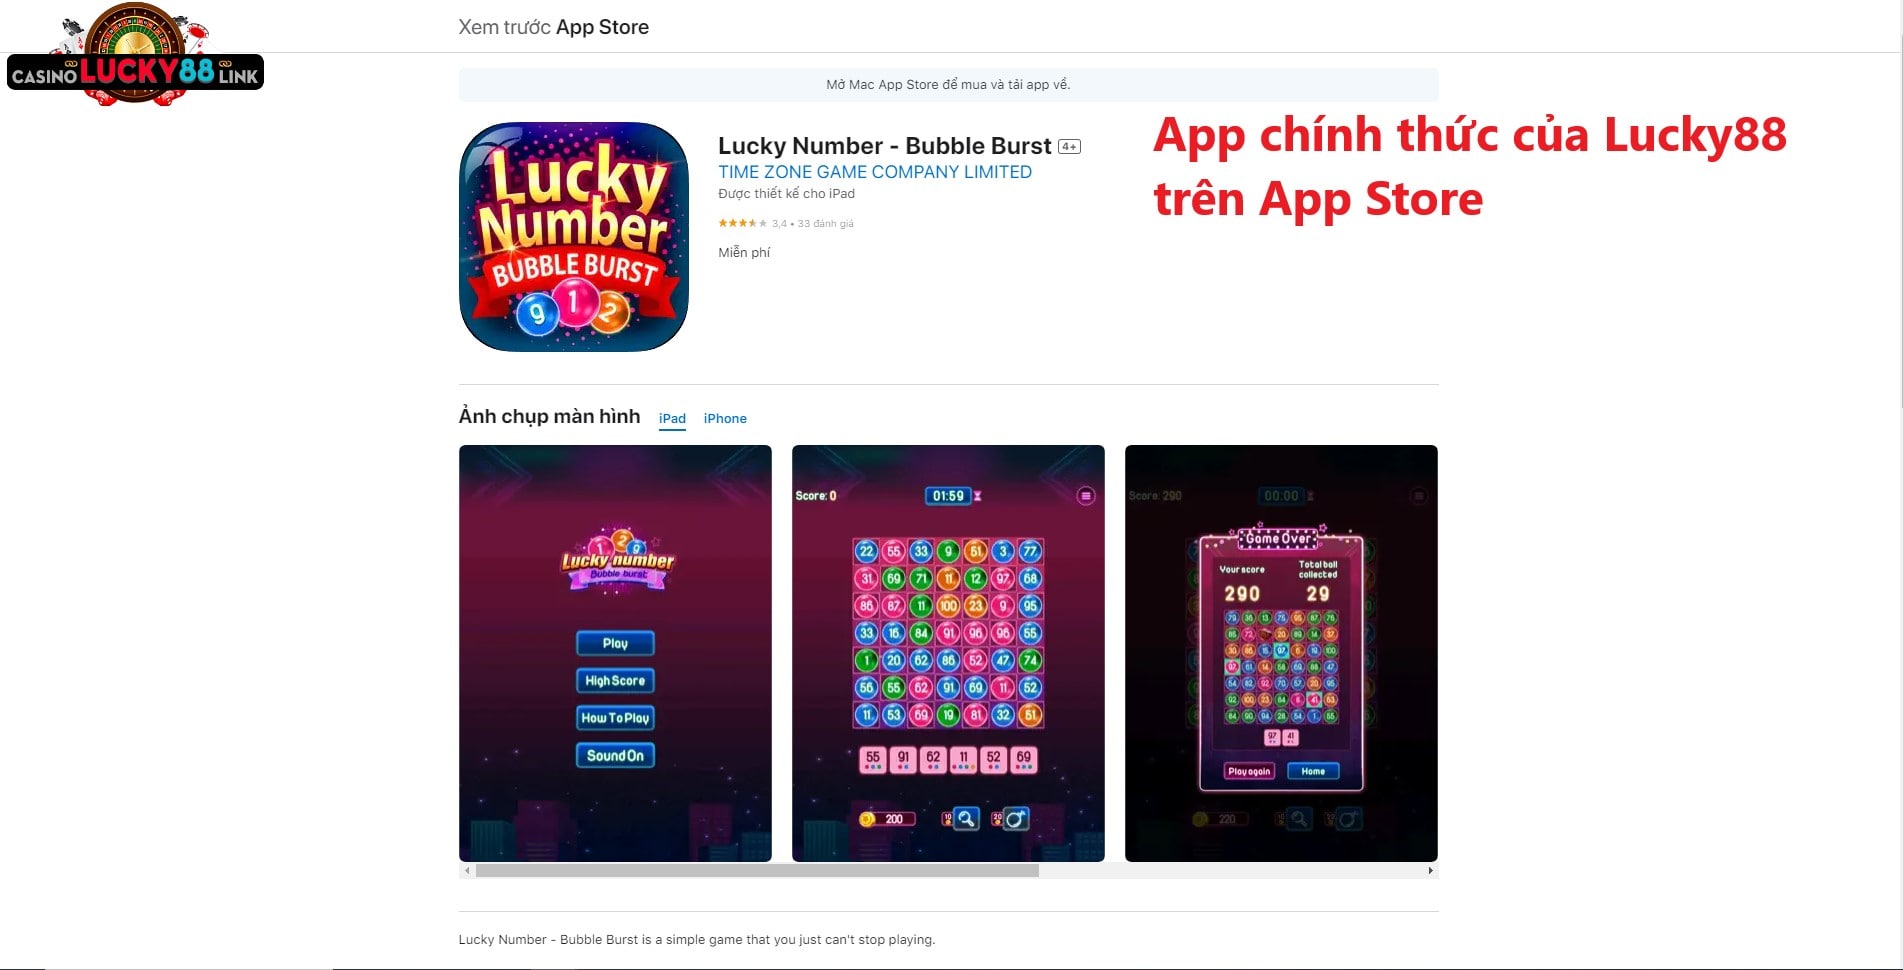 App chính thức của Lucky88 trên App Store